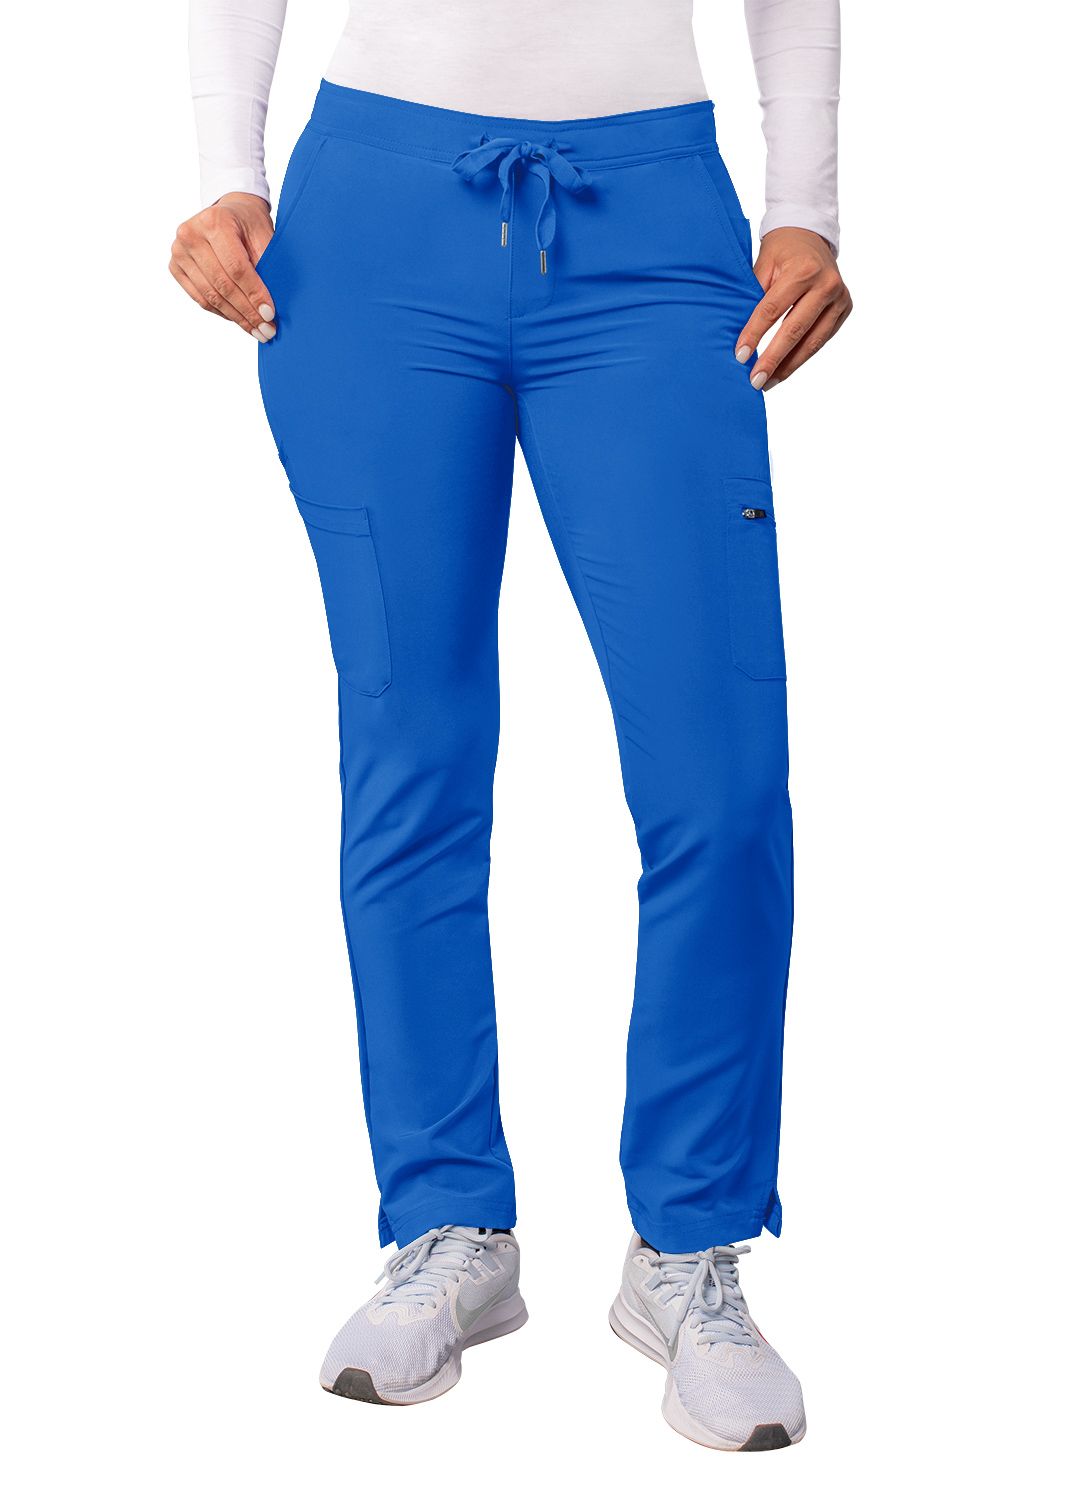 Addition Women's Skinny Leg Cargo Pant  by Adar (Petite) XXS-3XL / ROYAL BLUE